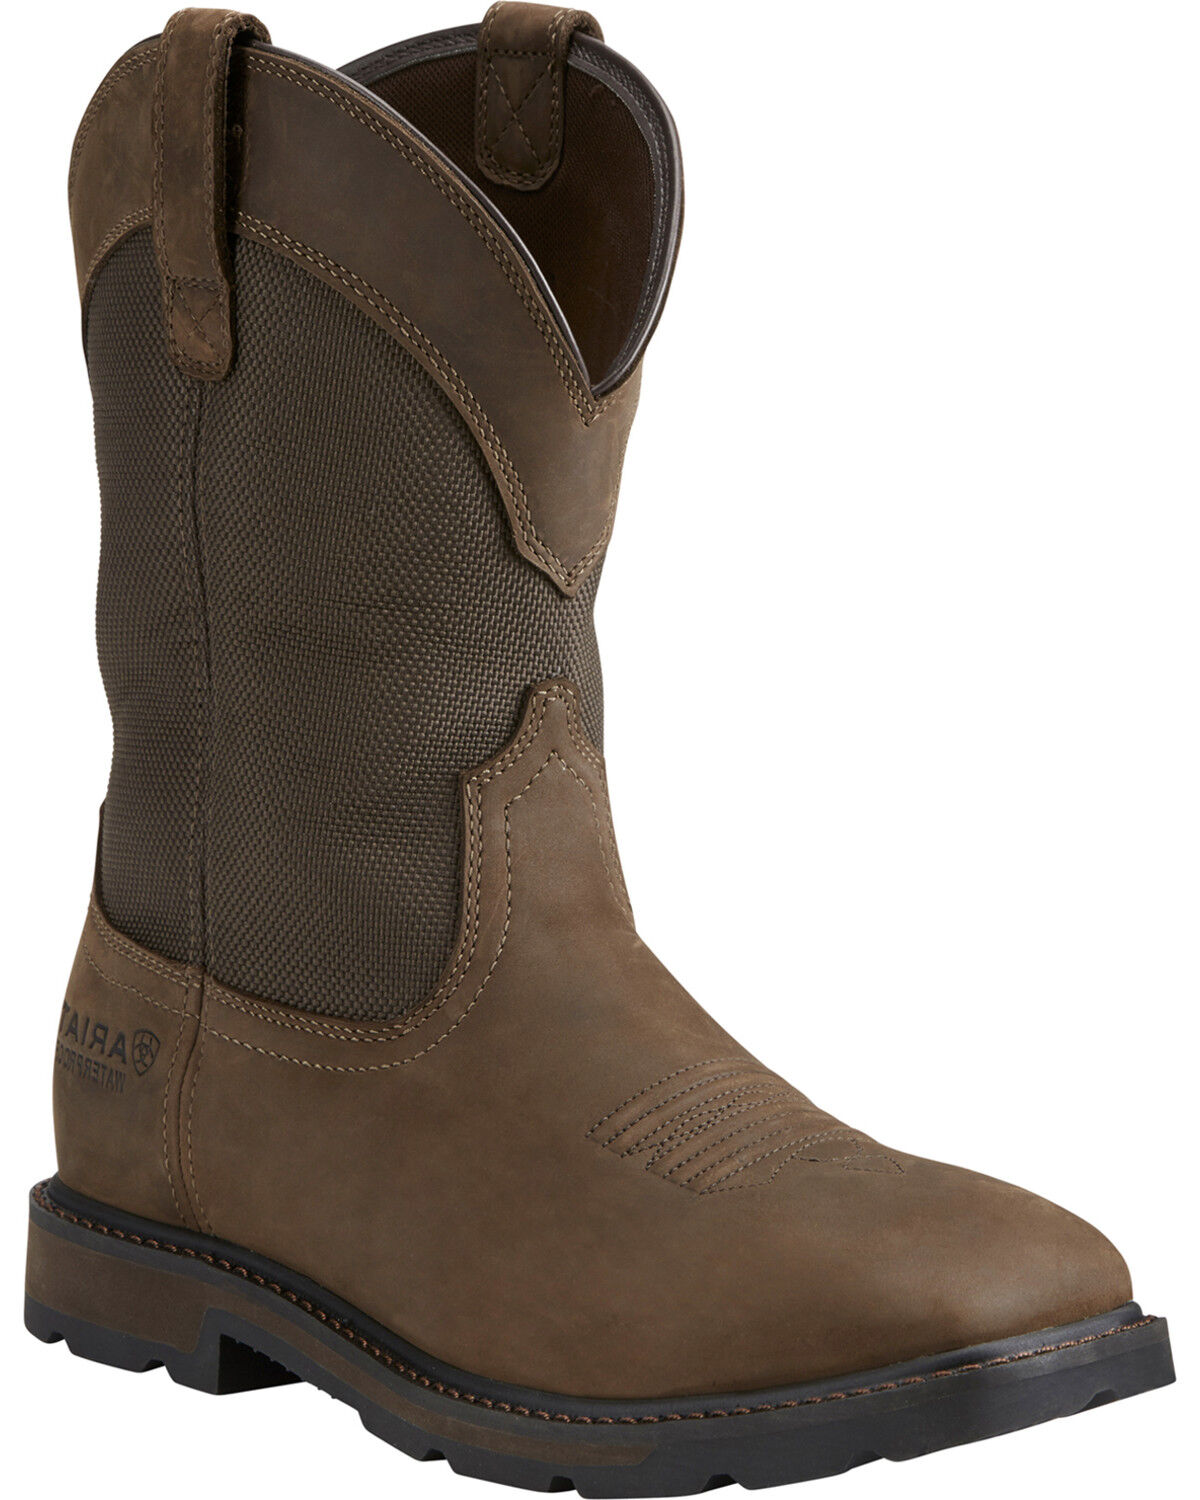 steel cap waterproof boots